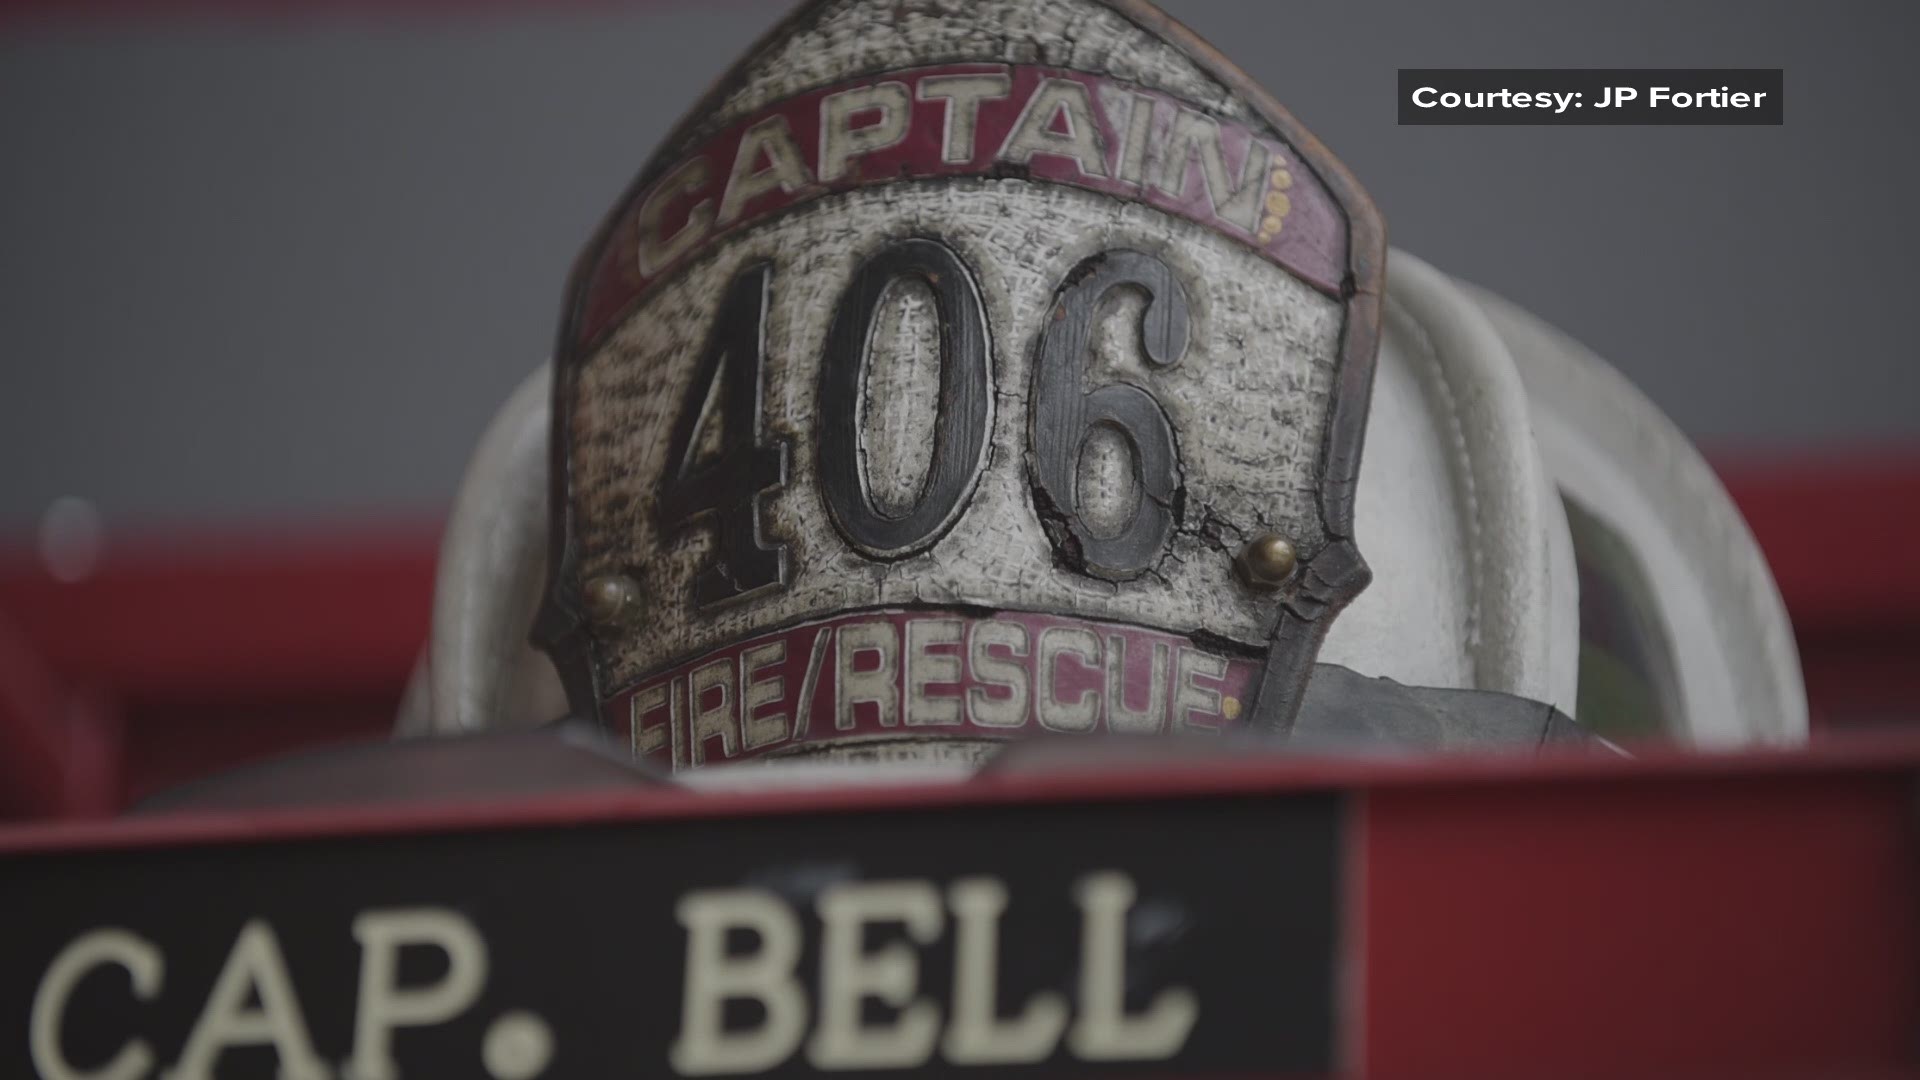 Farmington Fire Capt. Michael Bell video tribute, courtesy of Farmington Fire Rescue's former department photographer JP Fortier